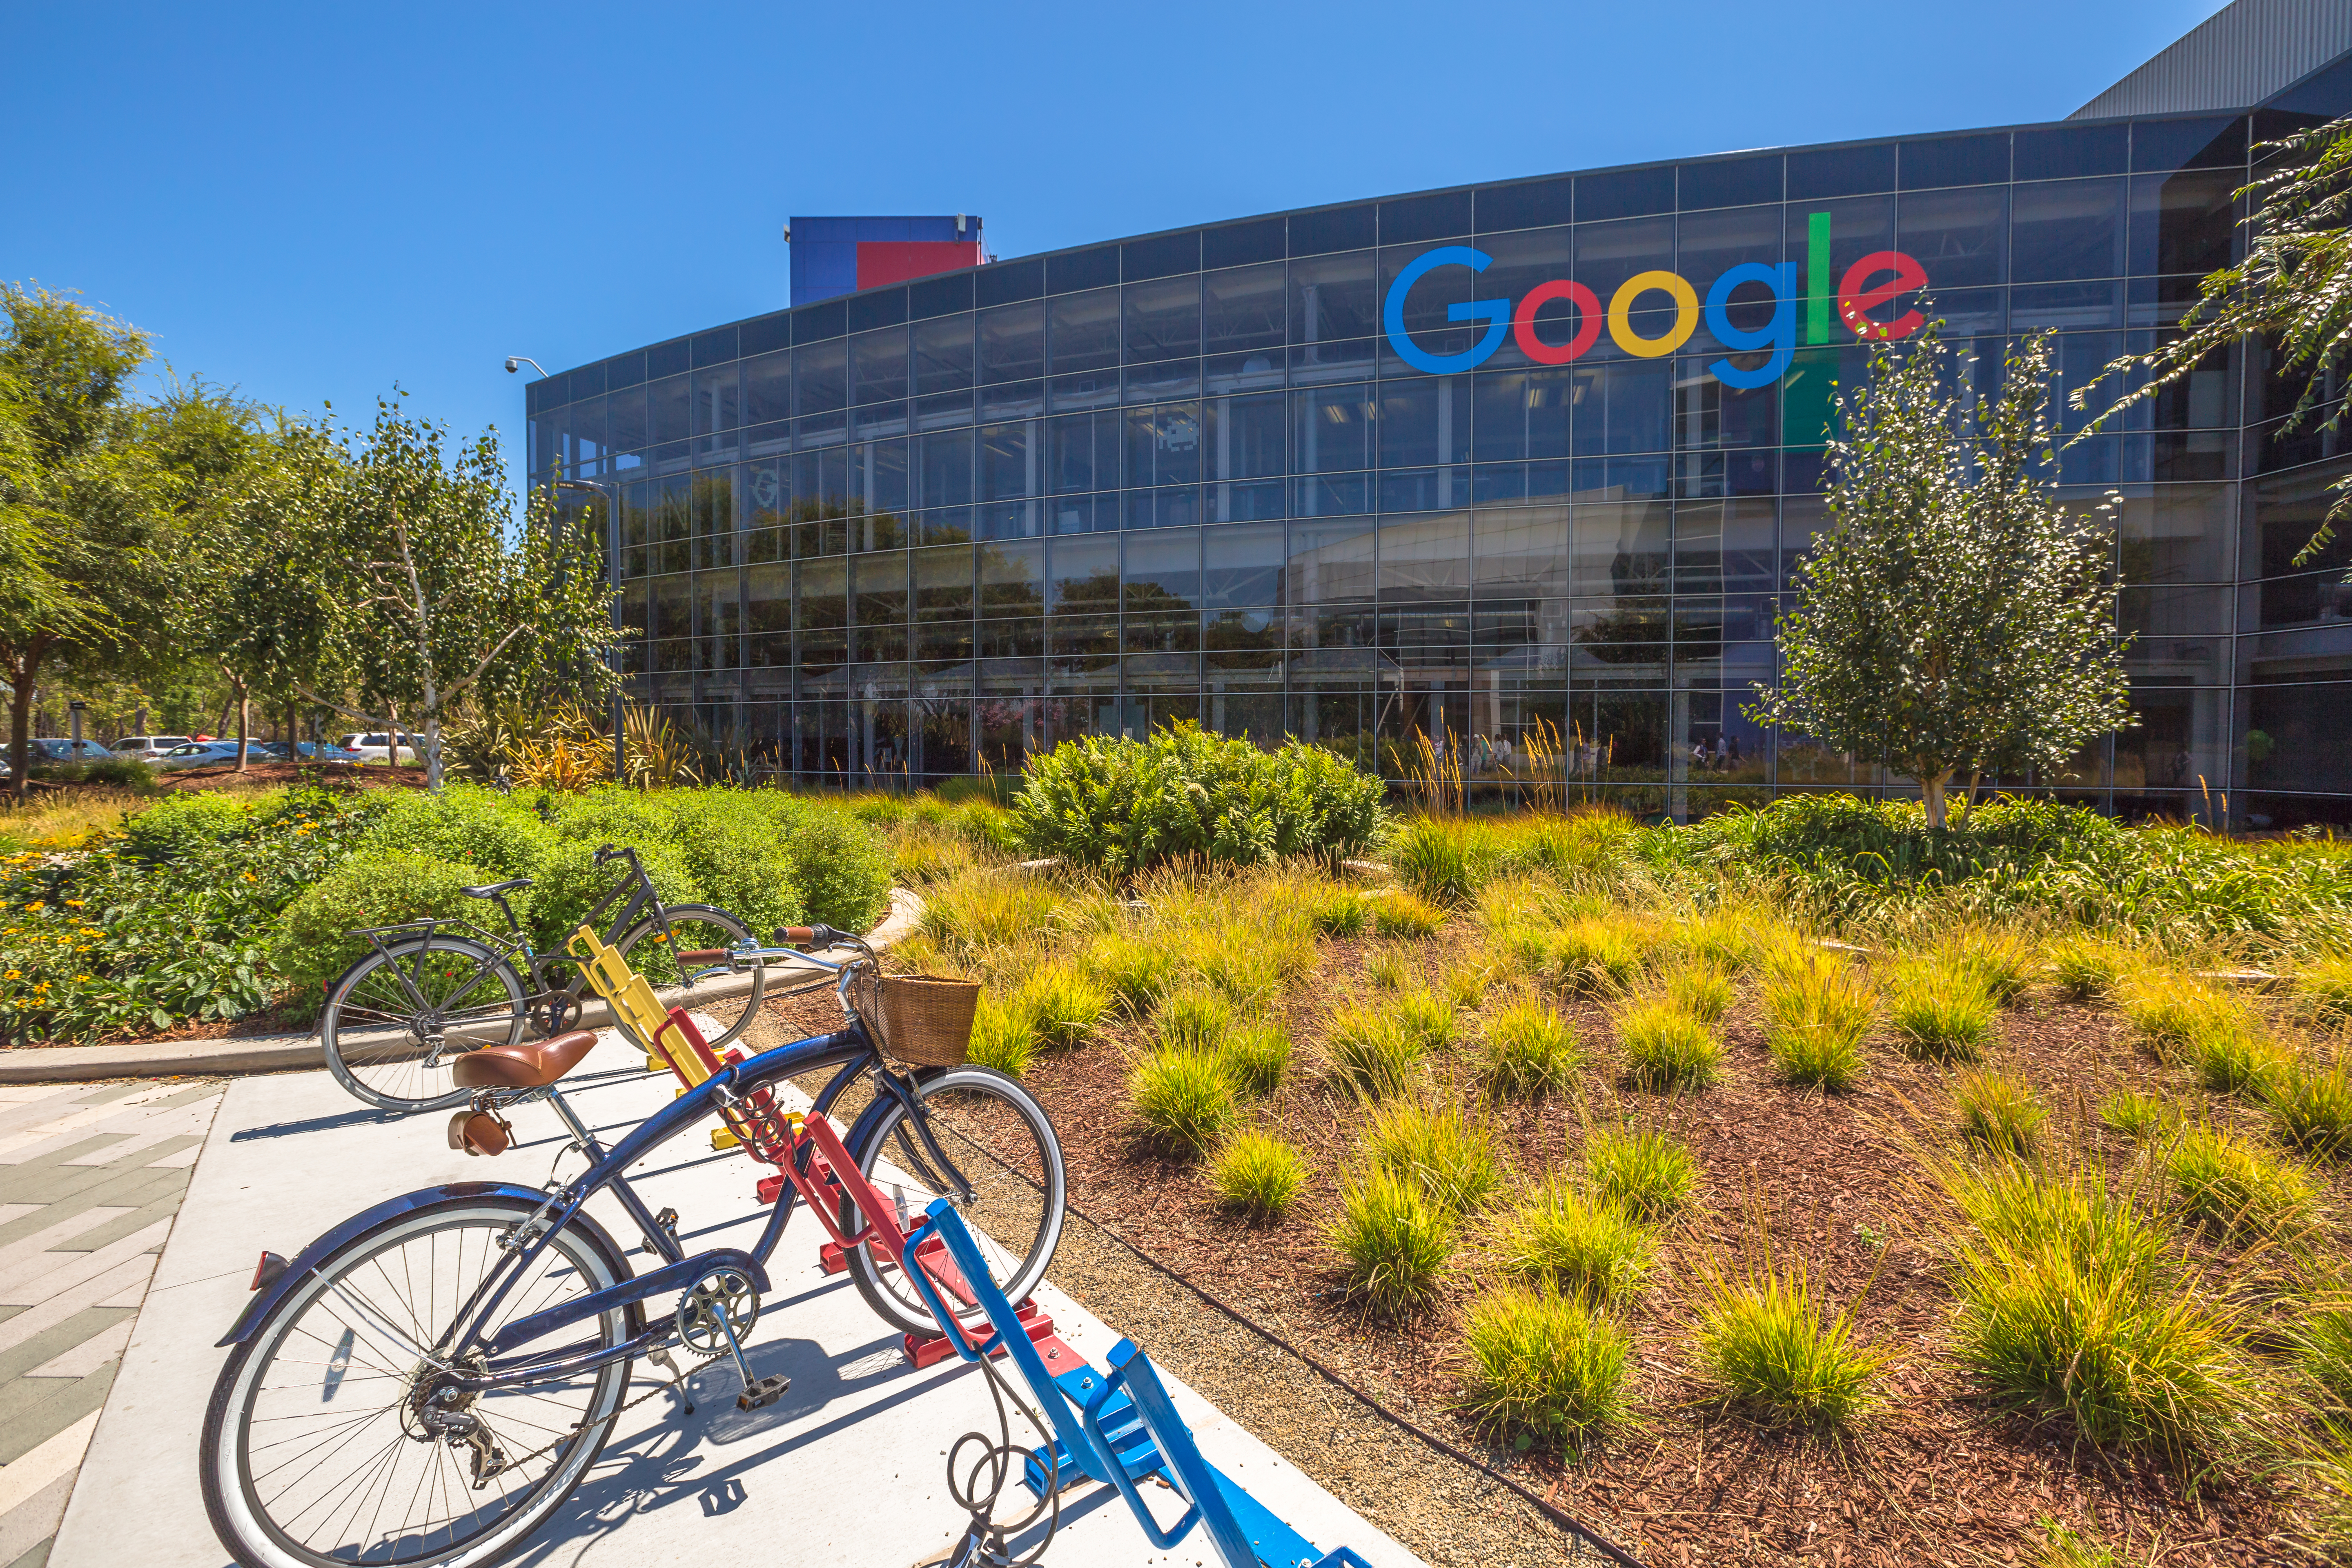 Toma una bici y recorre las zonas autorizadas de Googleplex. (Foto: iStock)